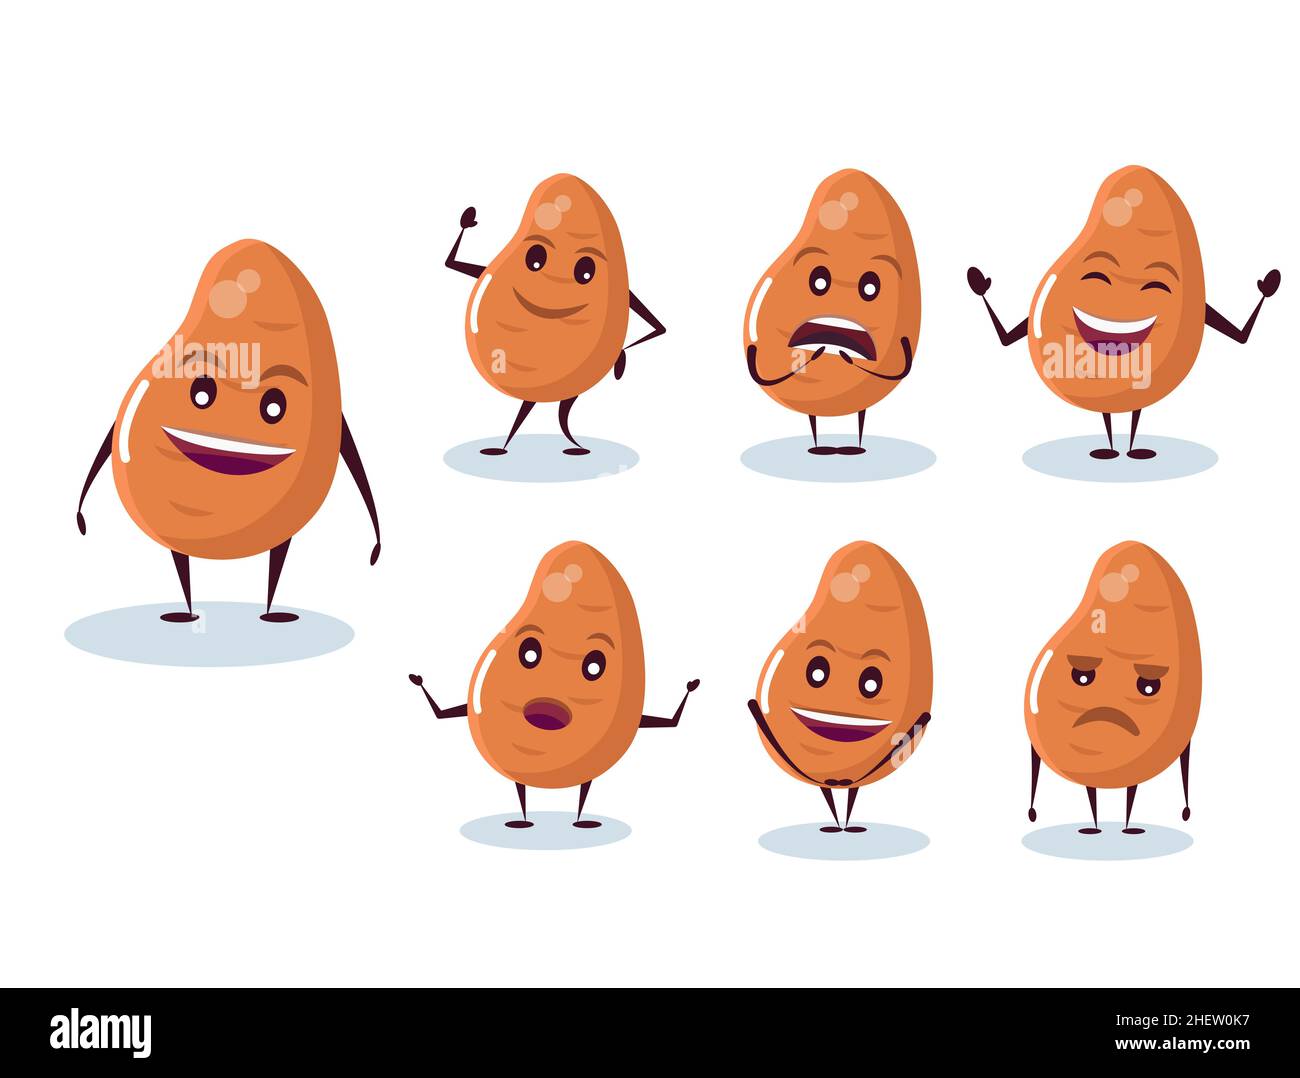 Set von Kartoffeln - Charakter und Emotionen. Anthropomorpher Held. Vektorgrafik im Cartoon-Stil. Stock Vektor